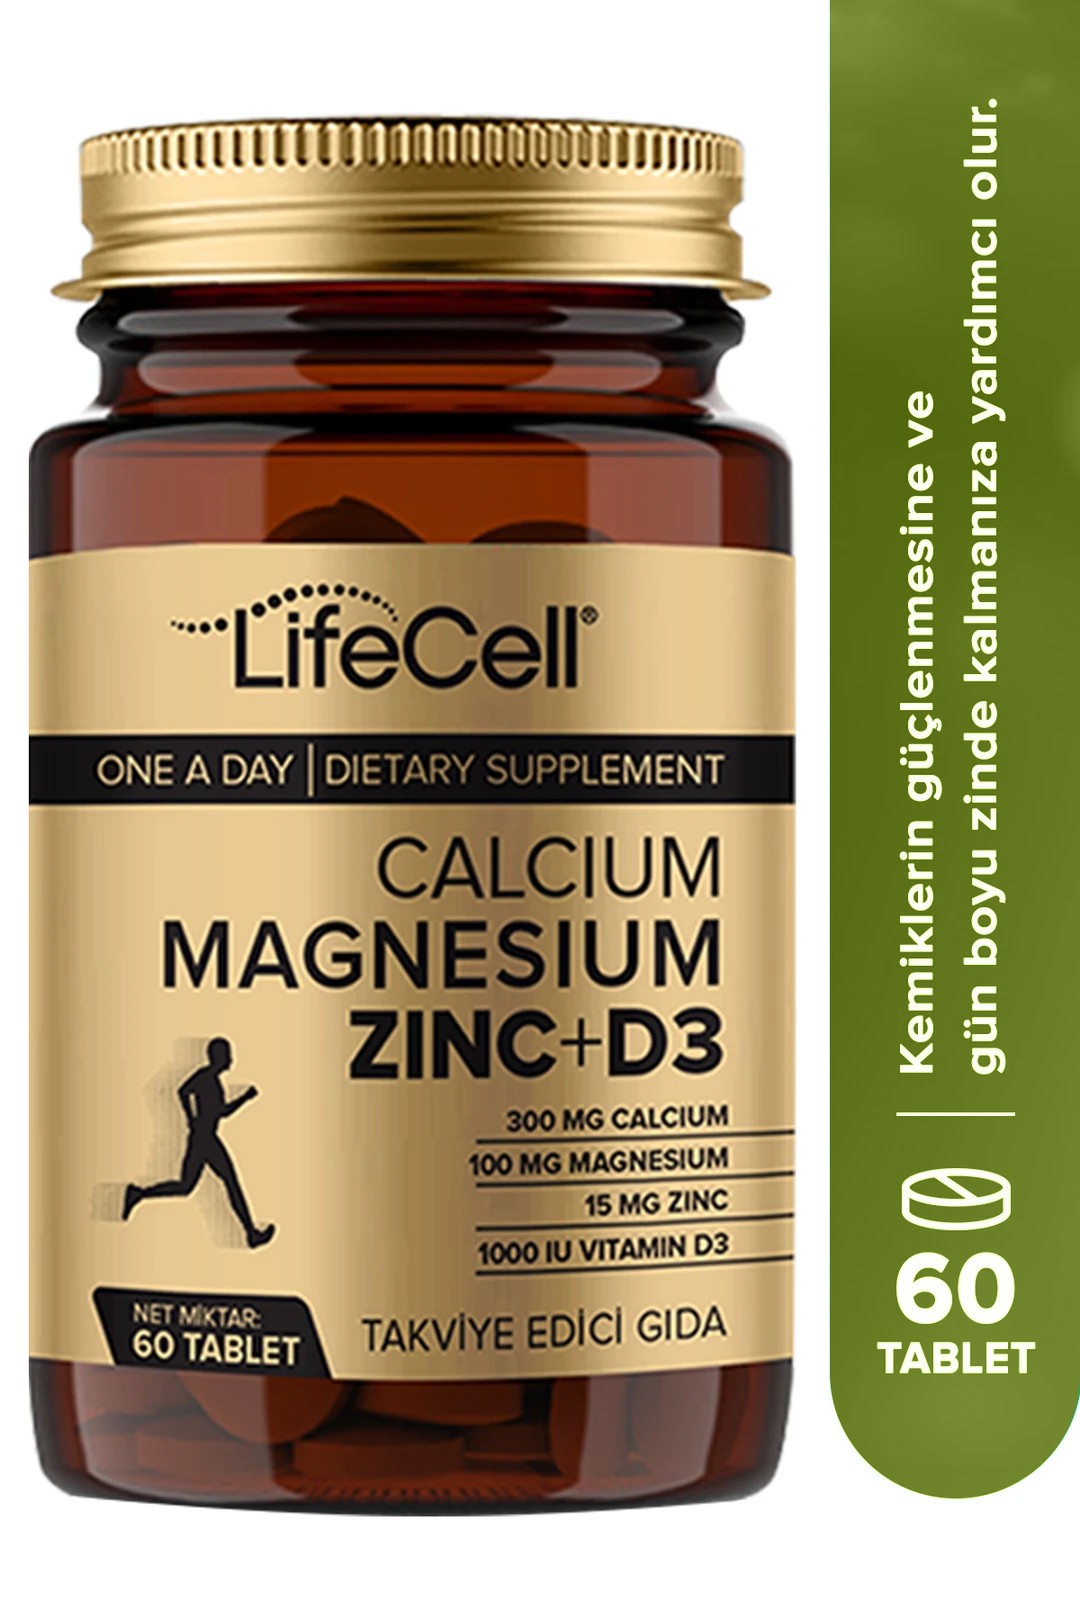 Calcium ‐ Magnesium‐ Zinc+ D3